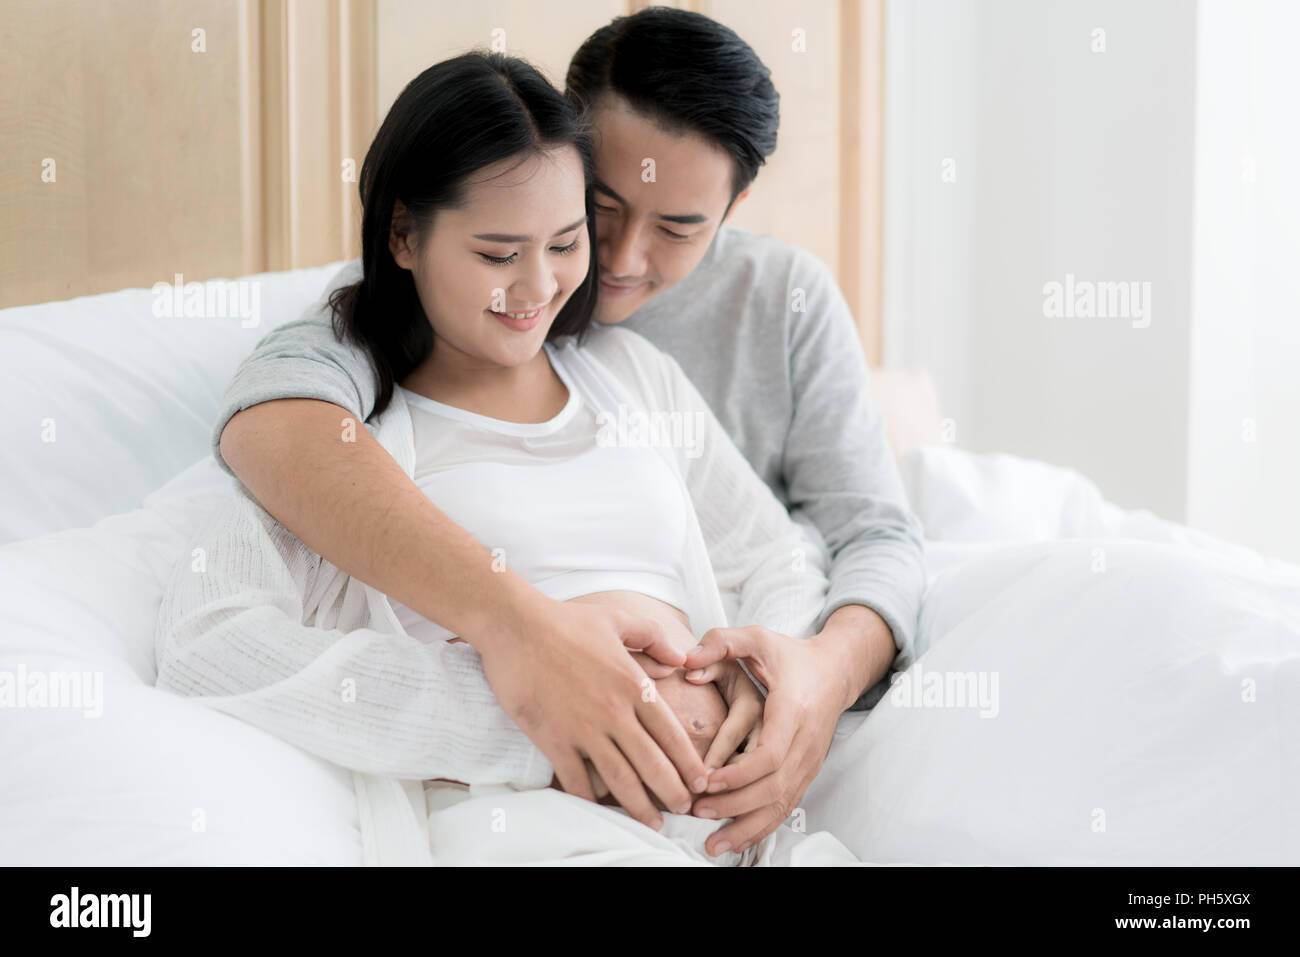 Zugeschnittenes Bild der schönen schwangeren Frau und ihrem stattlichen Mann umarmen den Bauch. Liebe Paar Hände machen ein Herz auf den schwangeren Bauch. Stockfoto